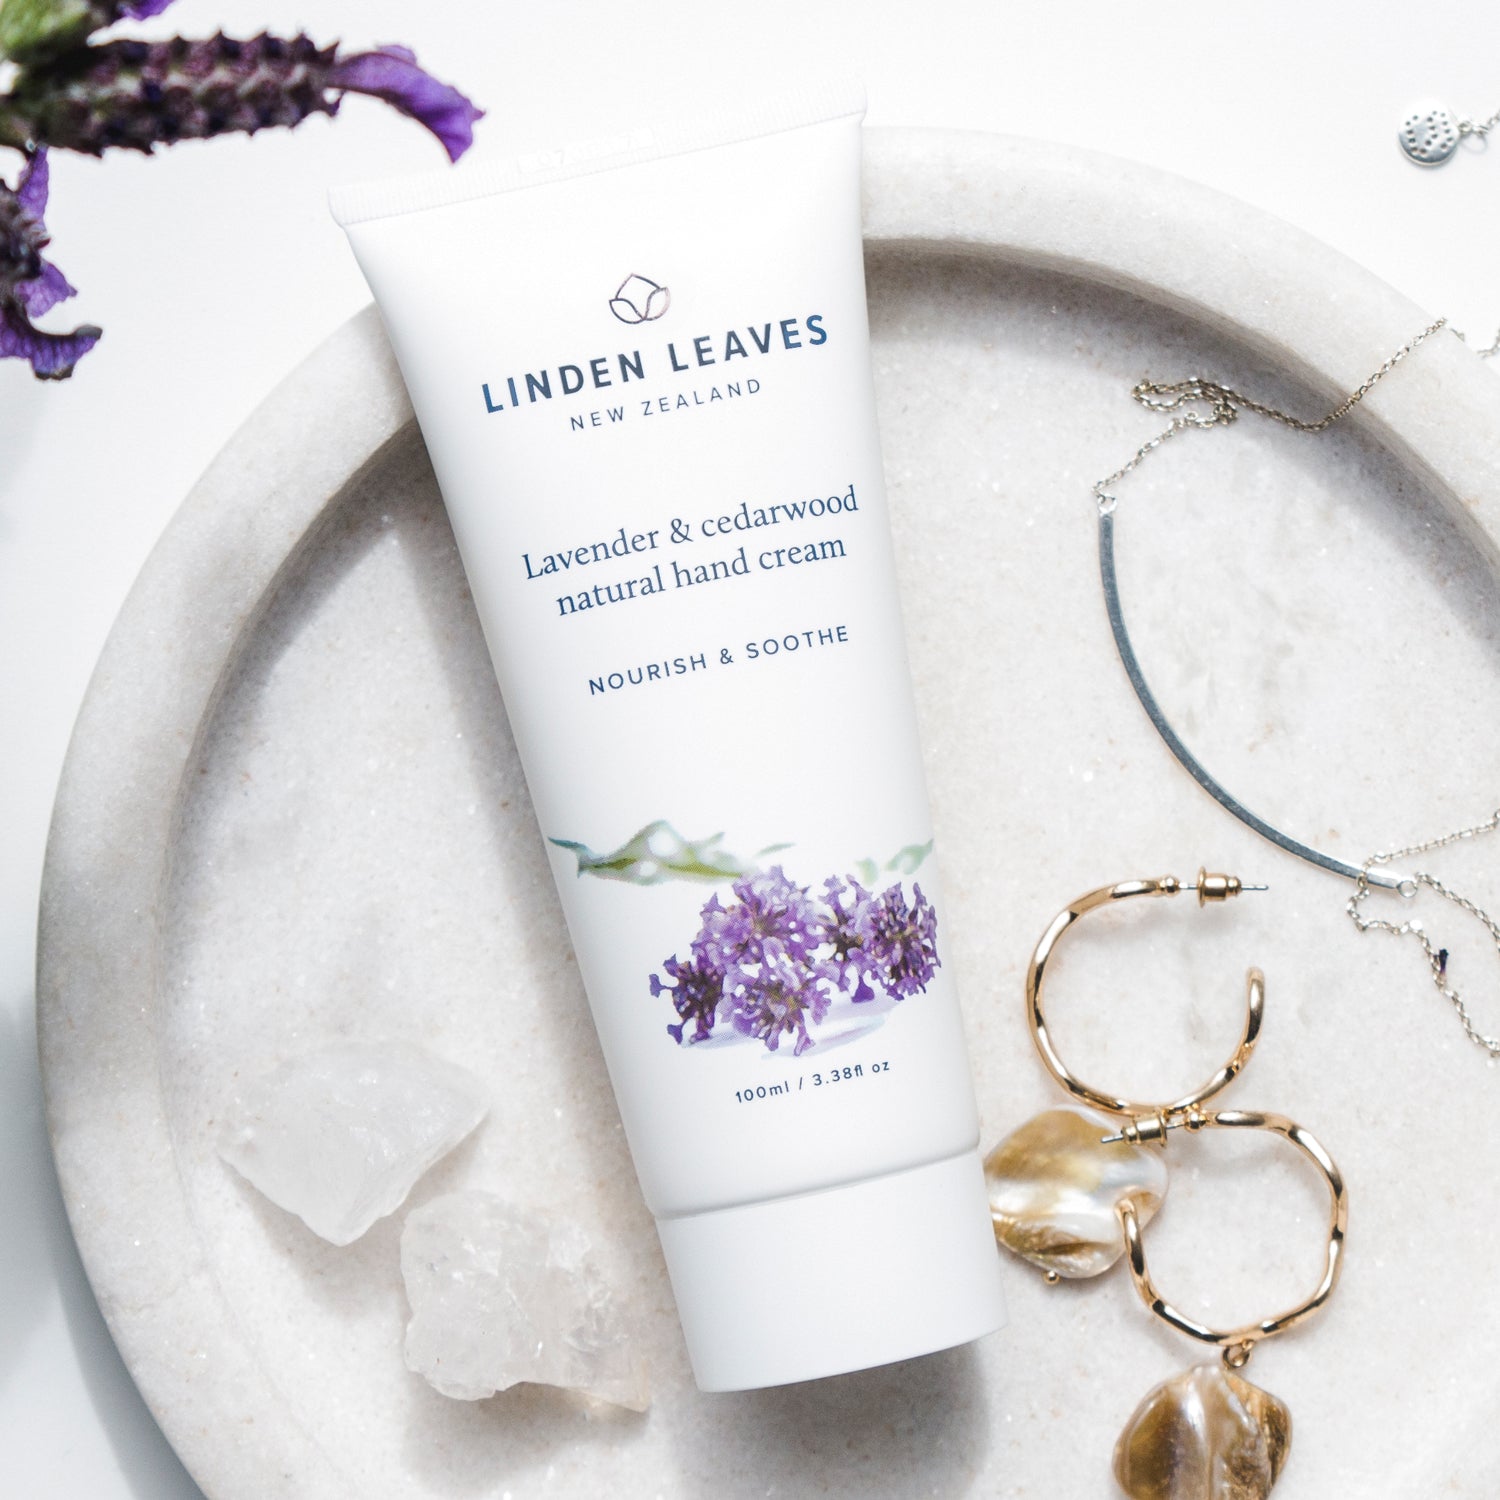 Linden Leaves Lavender & Cedarwood Natural Hand Cream 100ml.